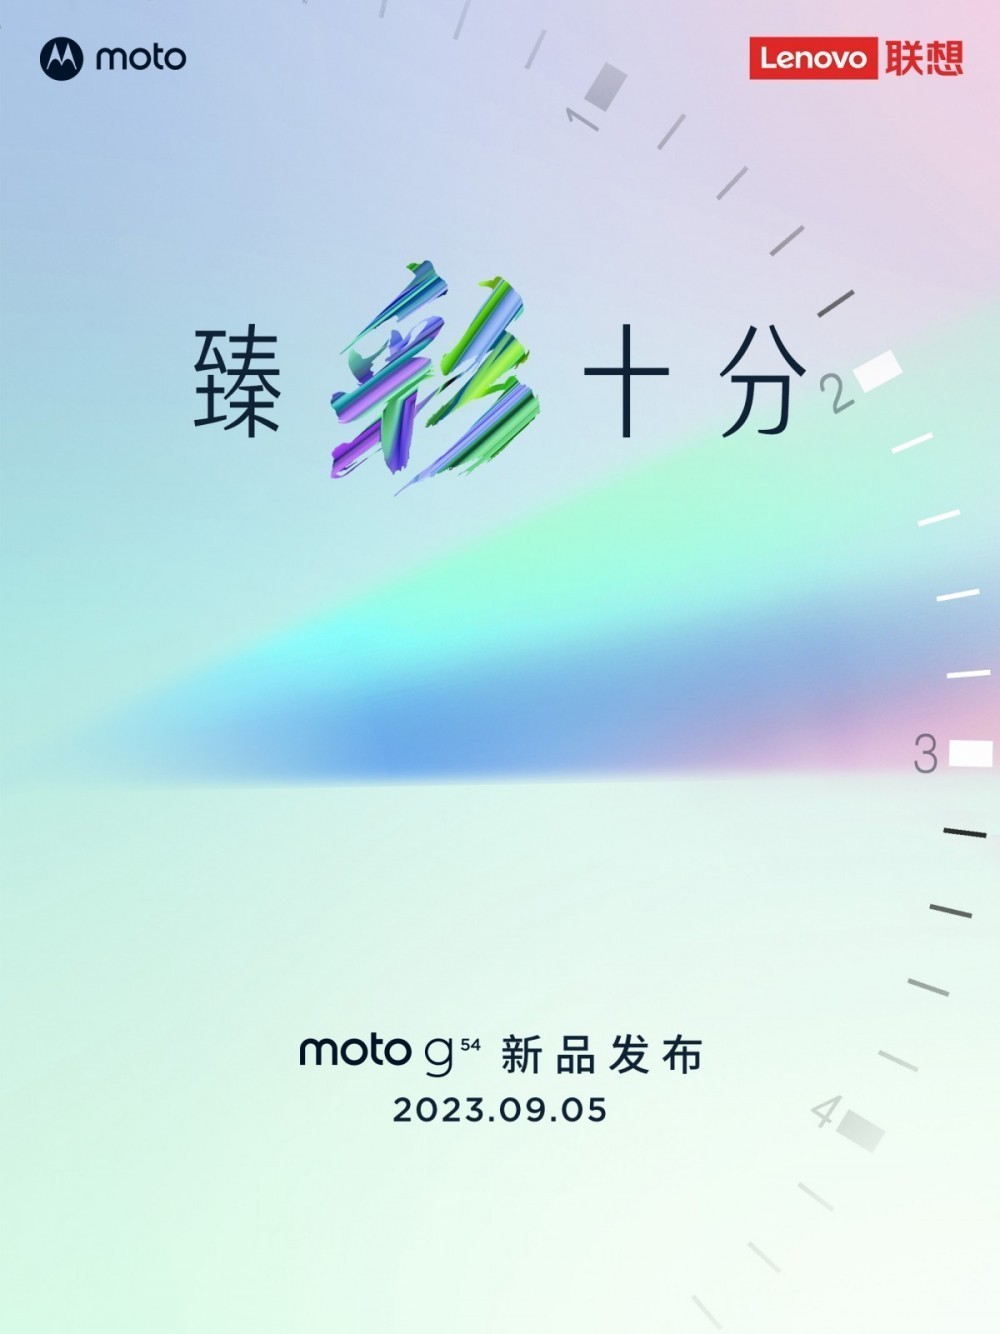 Moto G54 5G çıkış tarihi paylaşıldı